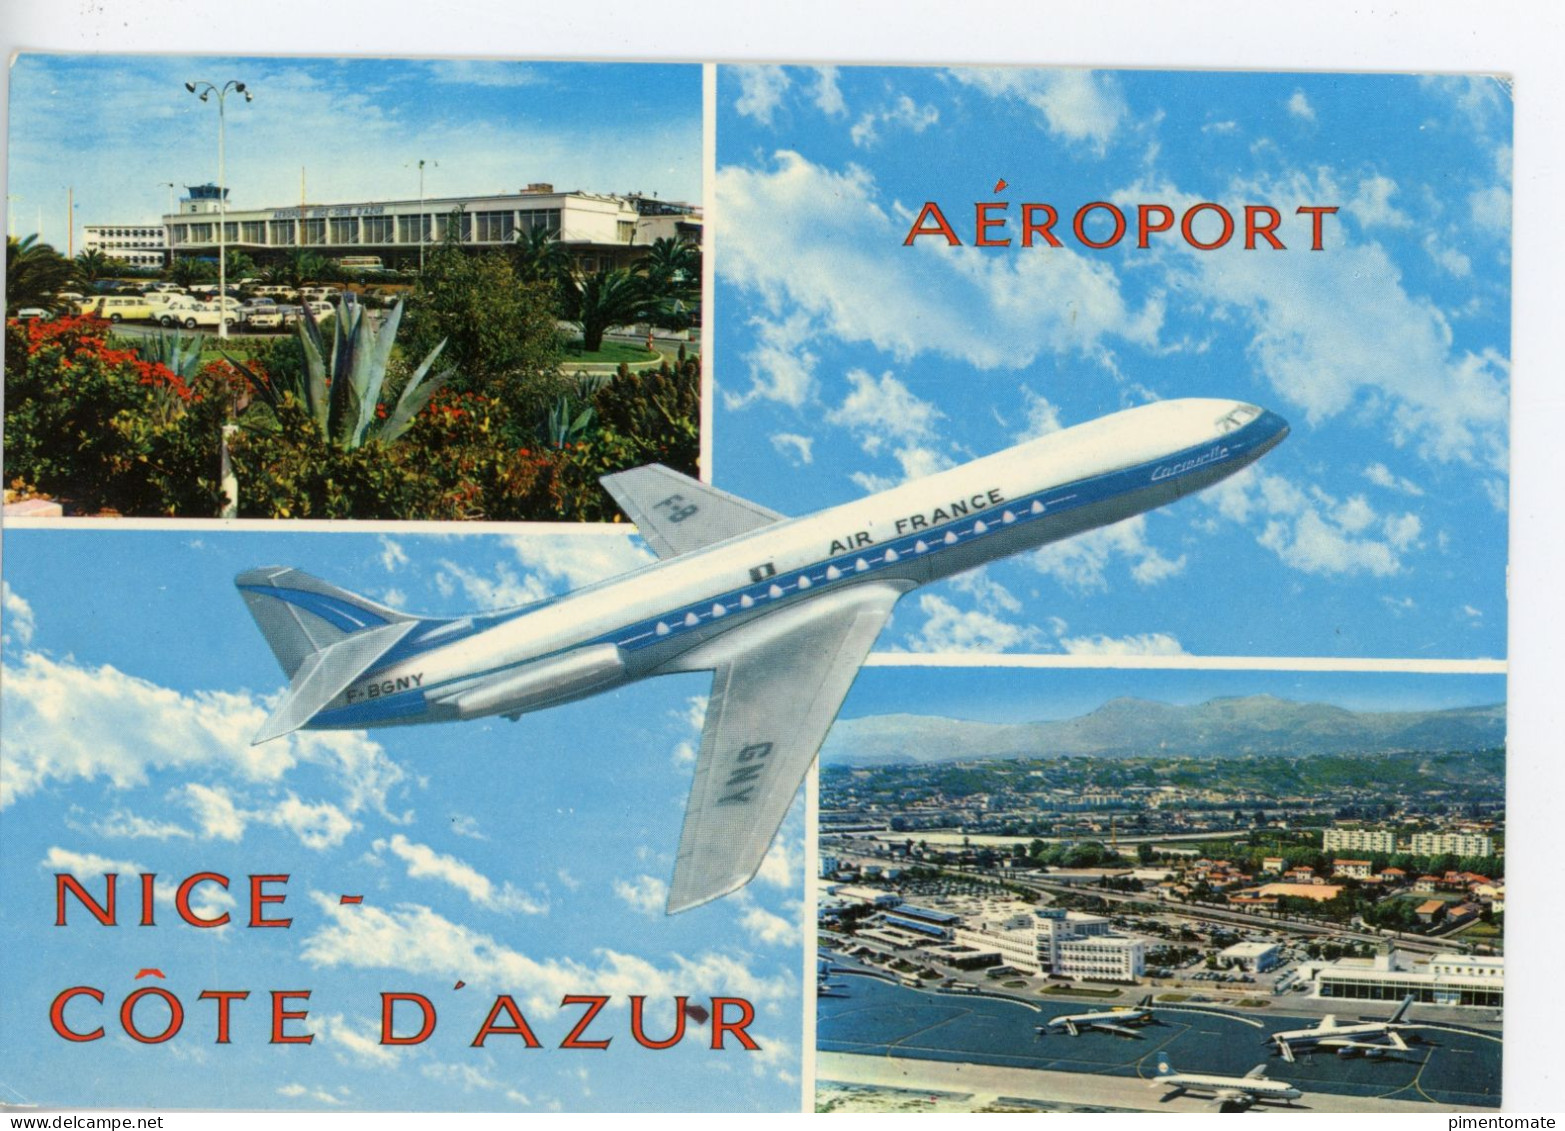 NICE AEROPORT NICE COTE D'AZUR CARAVELLE AIR FRANCE - Transport Aérien - Aéroport